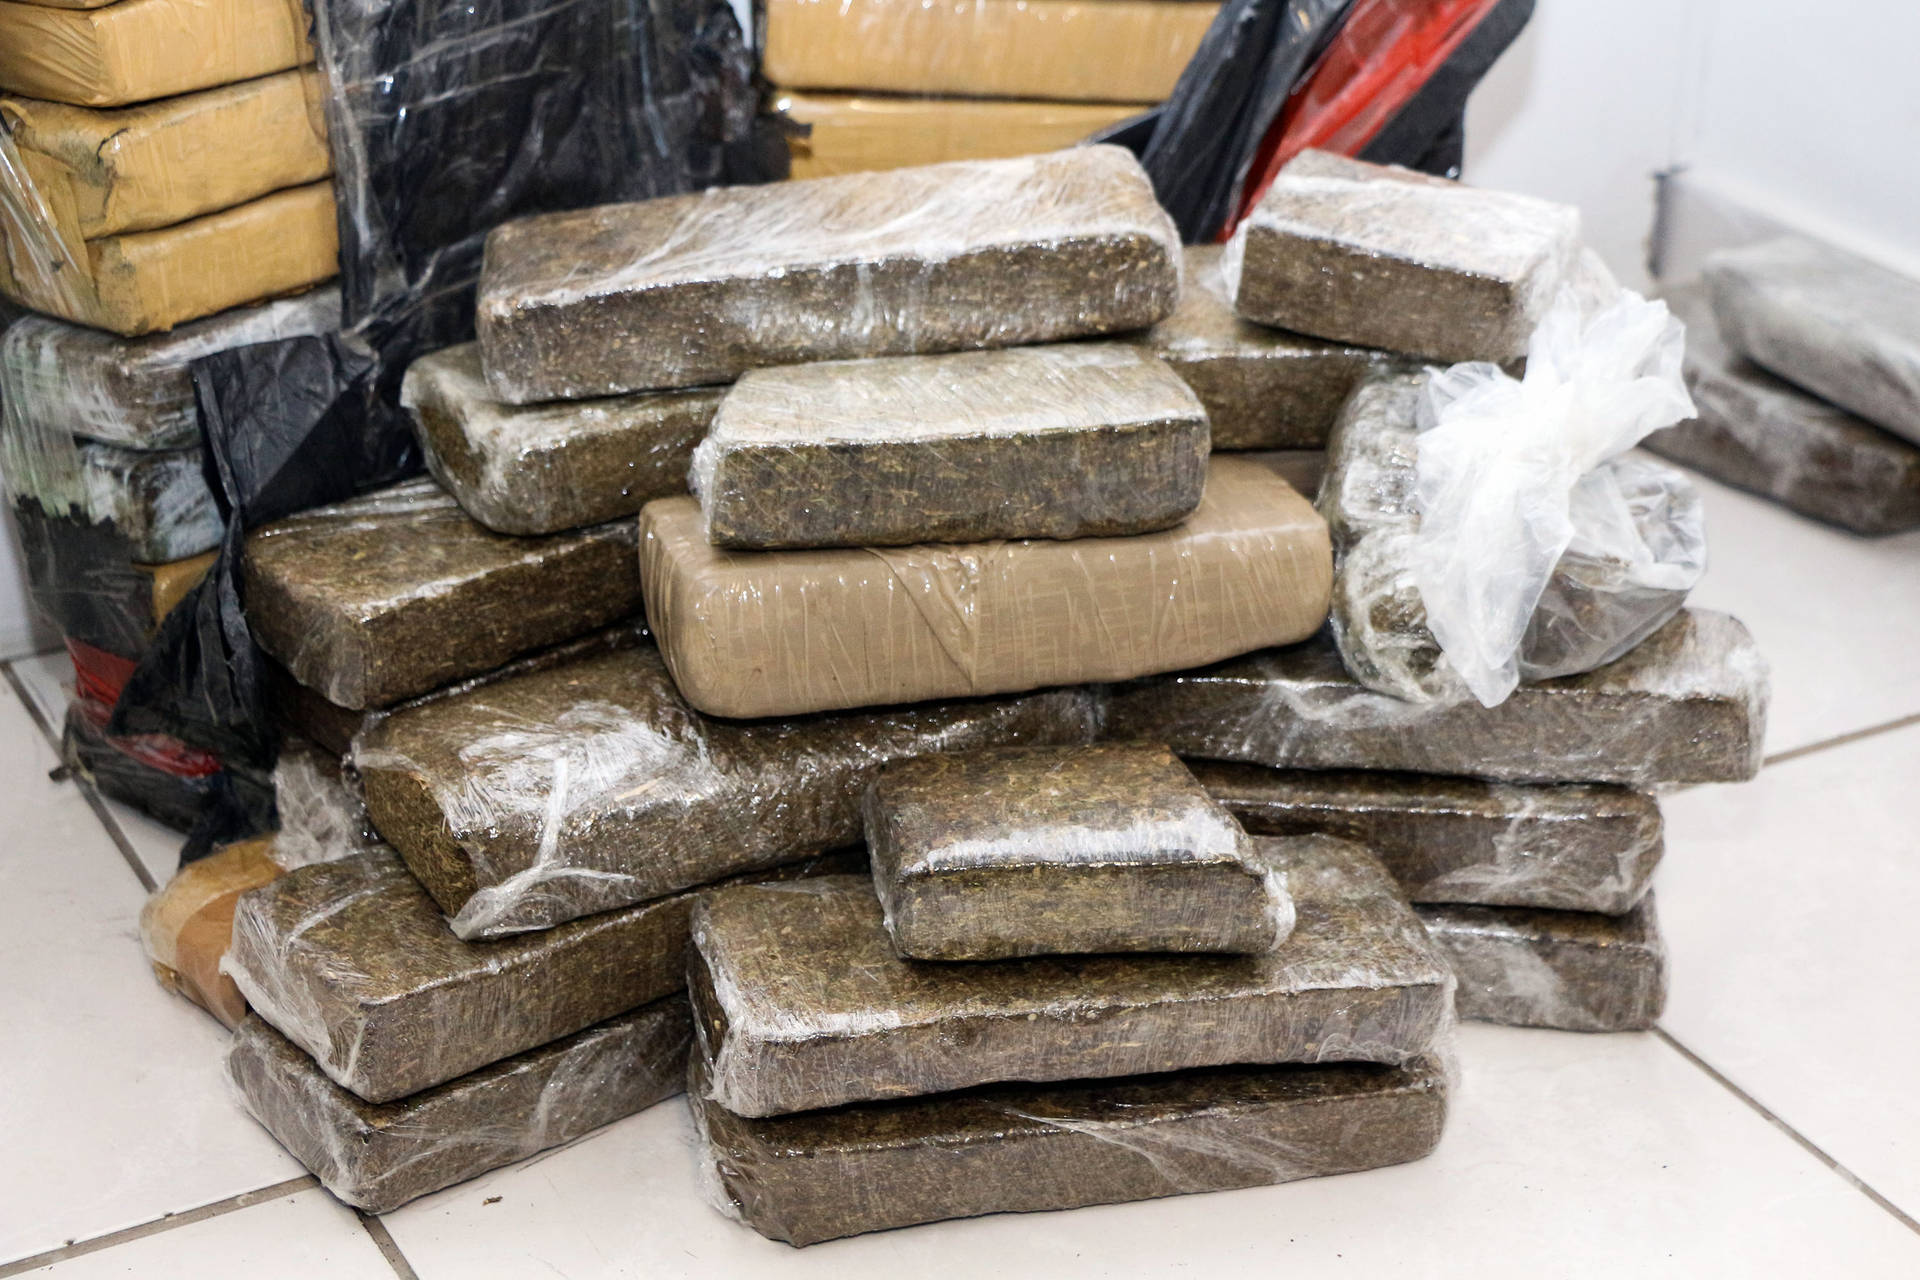  Polícias apreendem 107 toneladas de drogas de janeiro a setembro